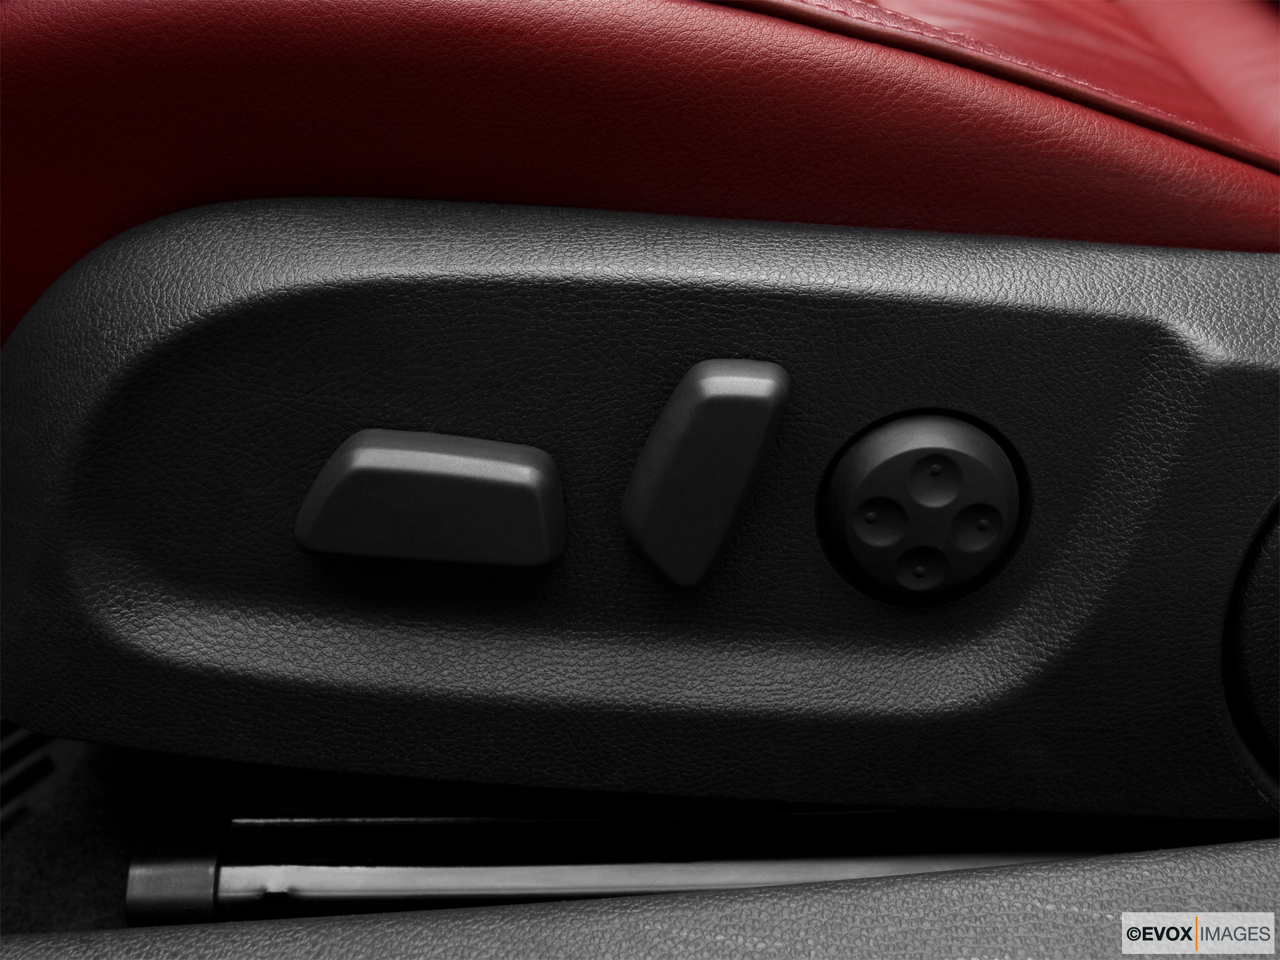 2010 Volkswagen Eos Lux Seat Adjustment Controllers. 